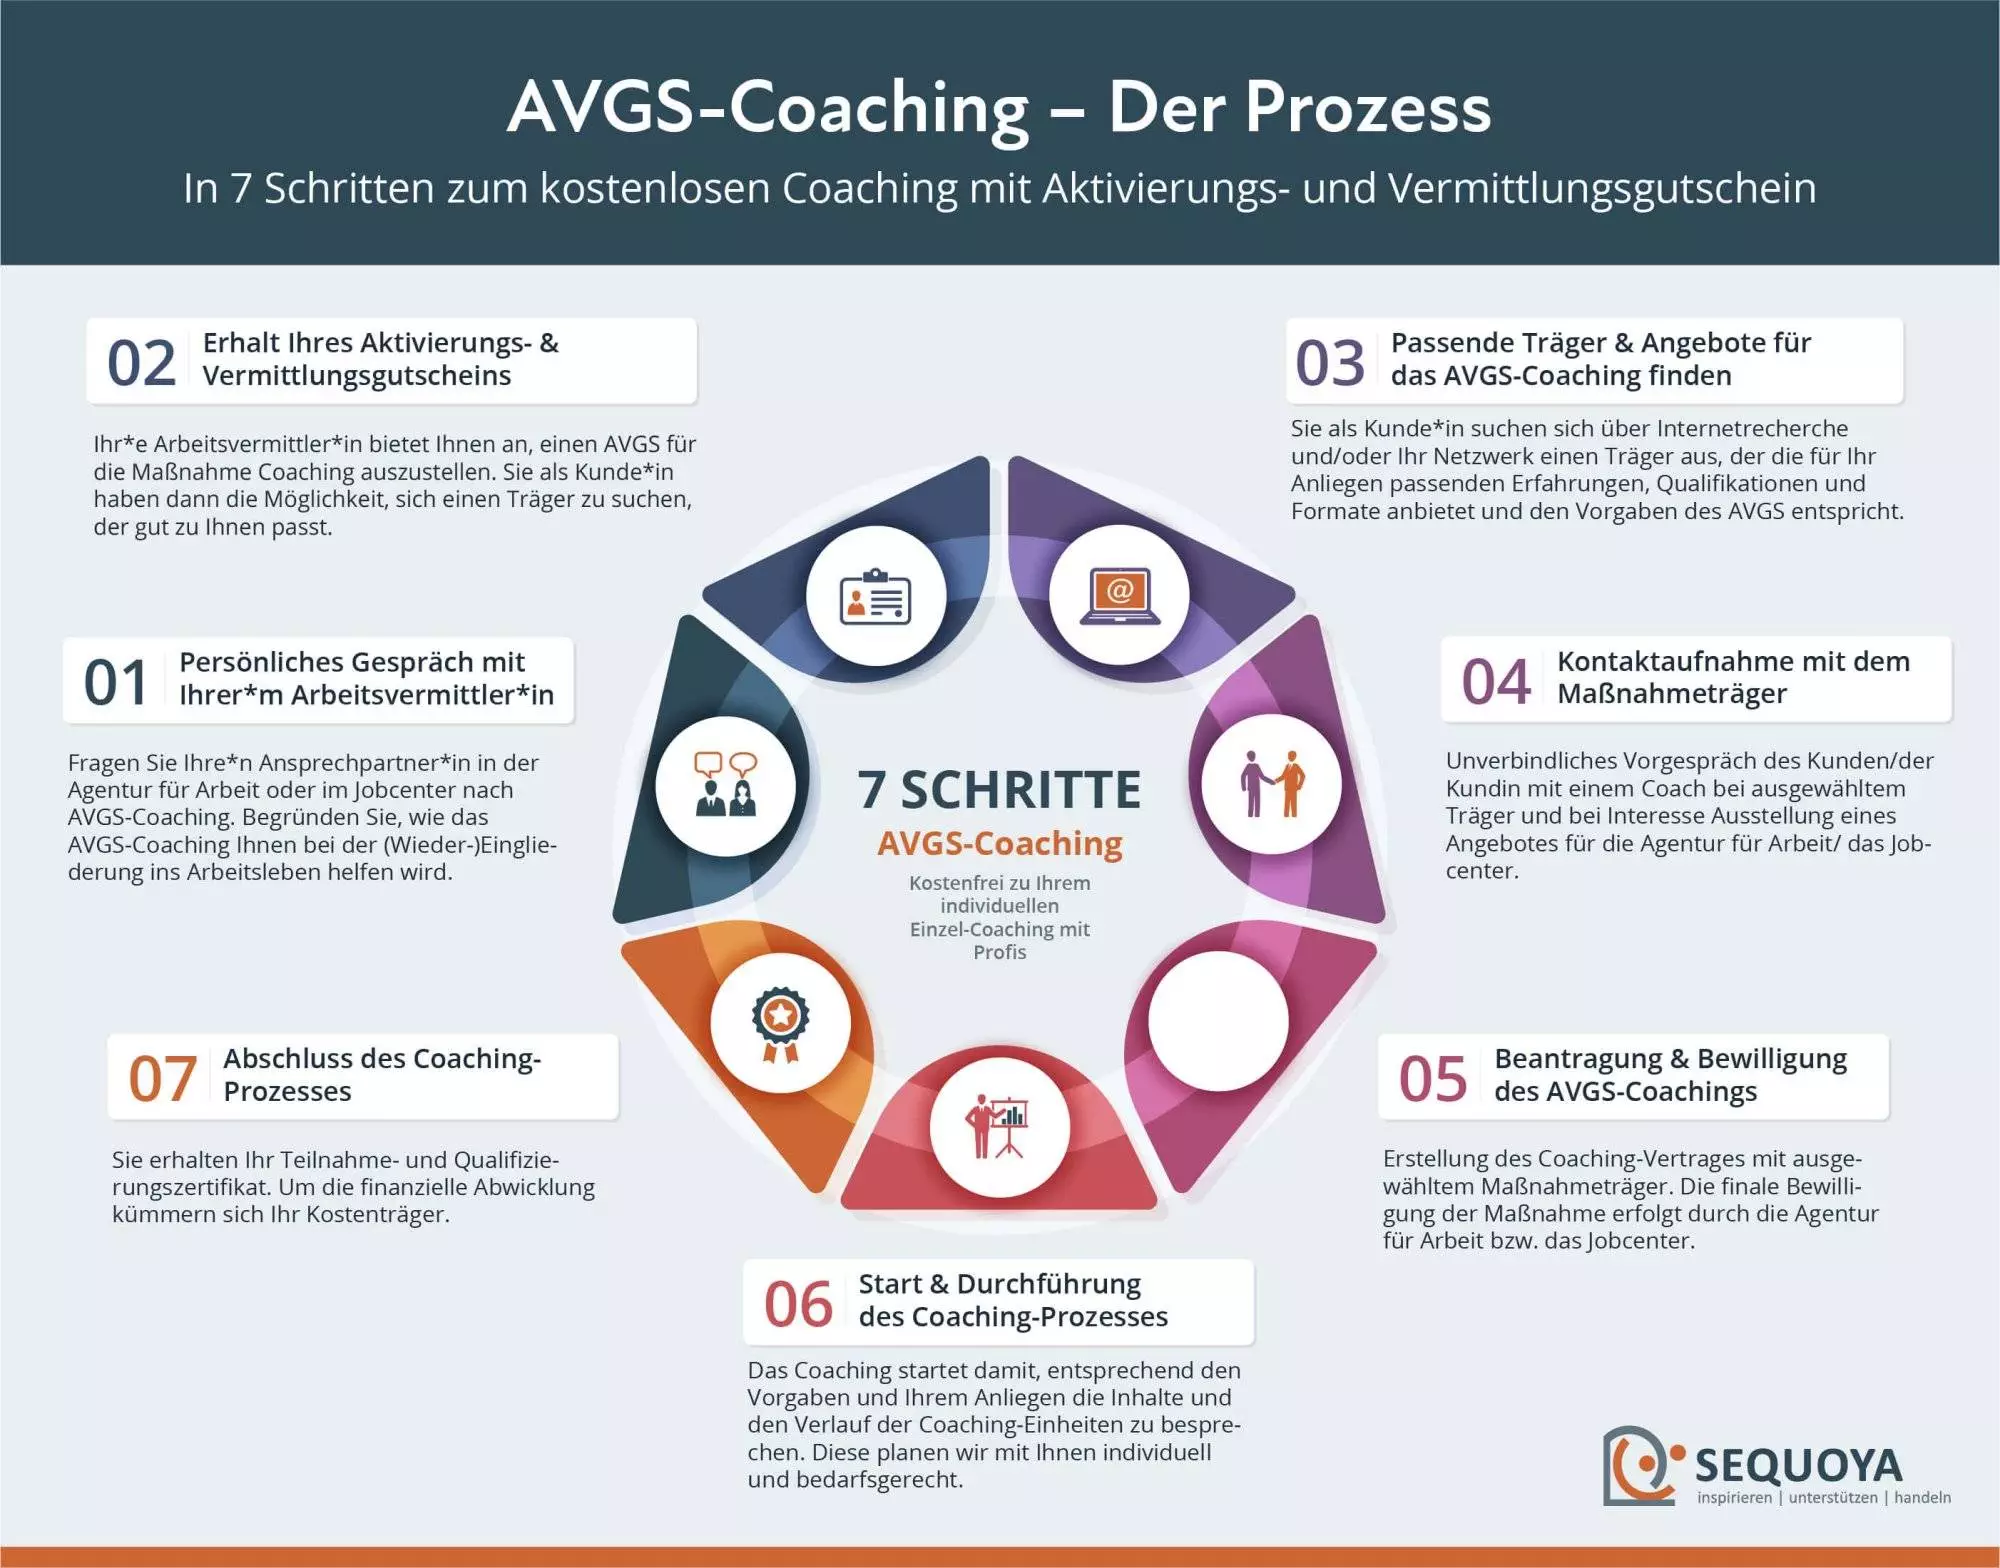 AVGS-Coaching Prozess (7 Schritte)